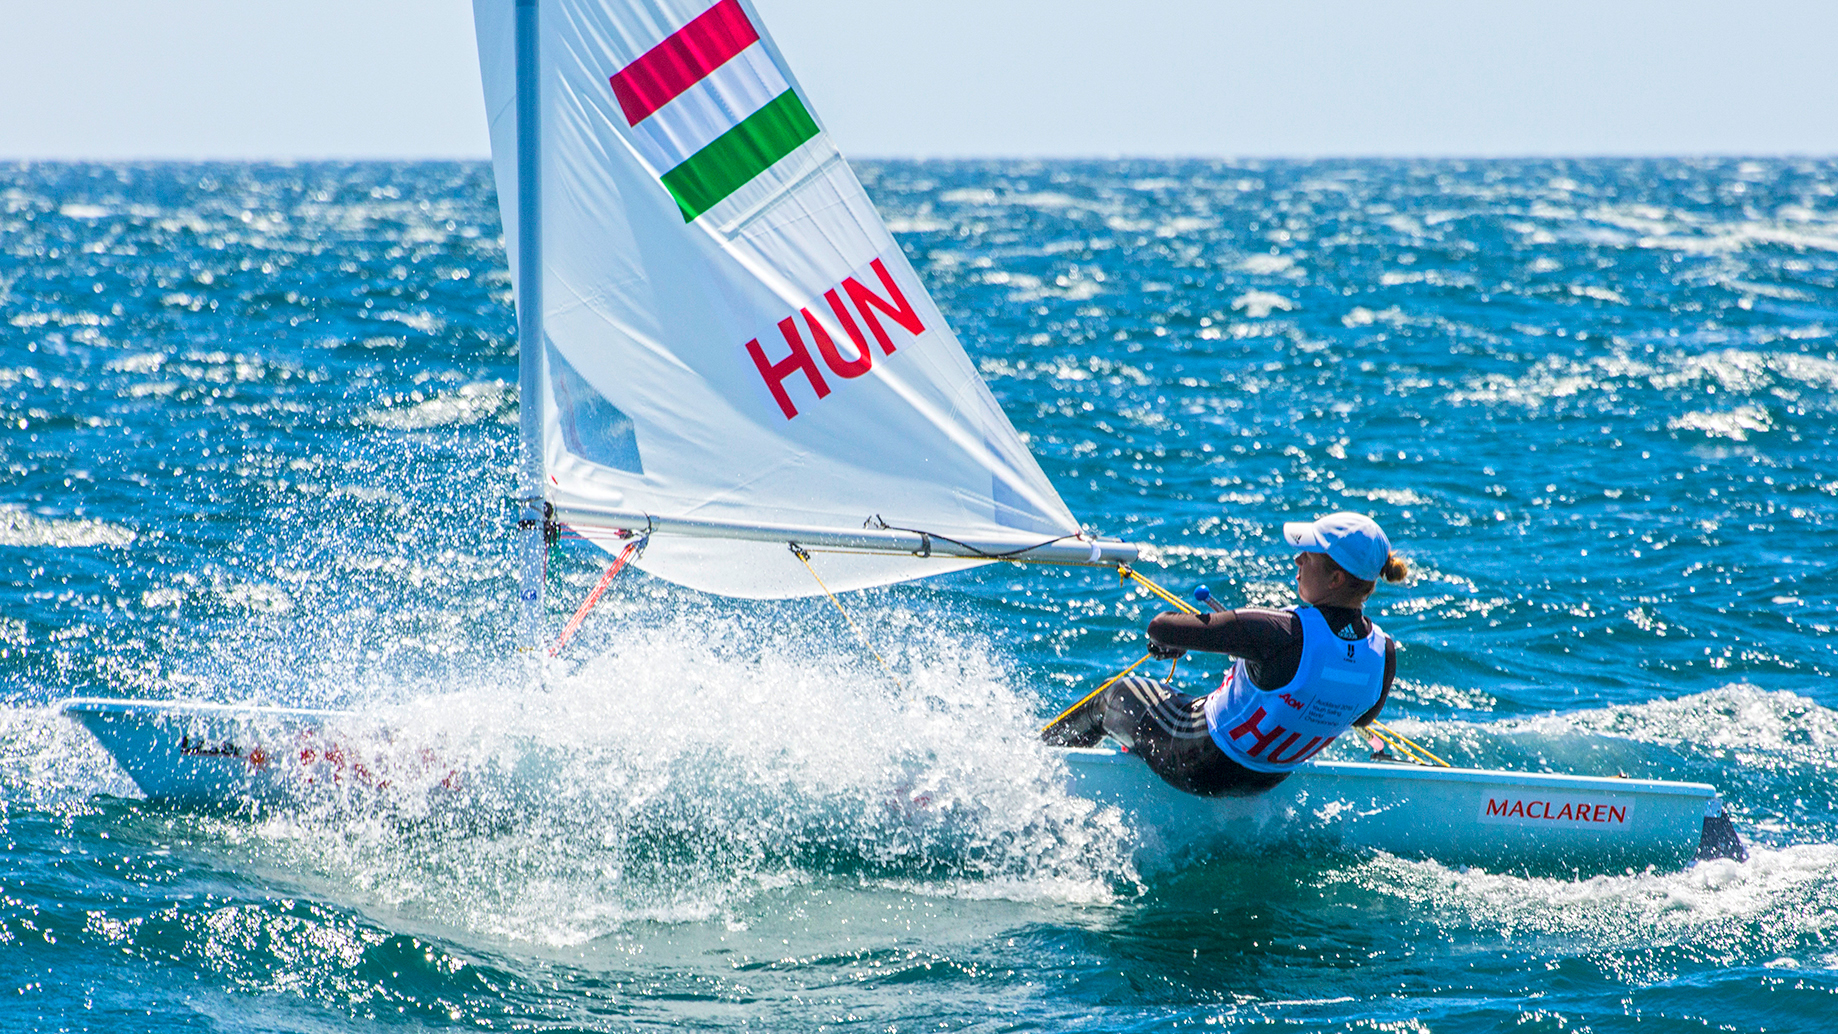 erdi-mari-youth-worlds-championship-uj-zeland-auckland-sailing-laser-radial-hajozashu-sailing-energy